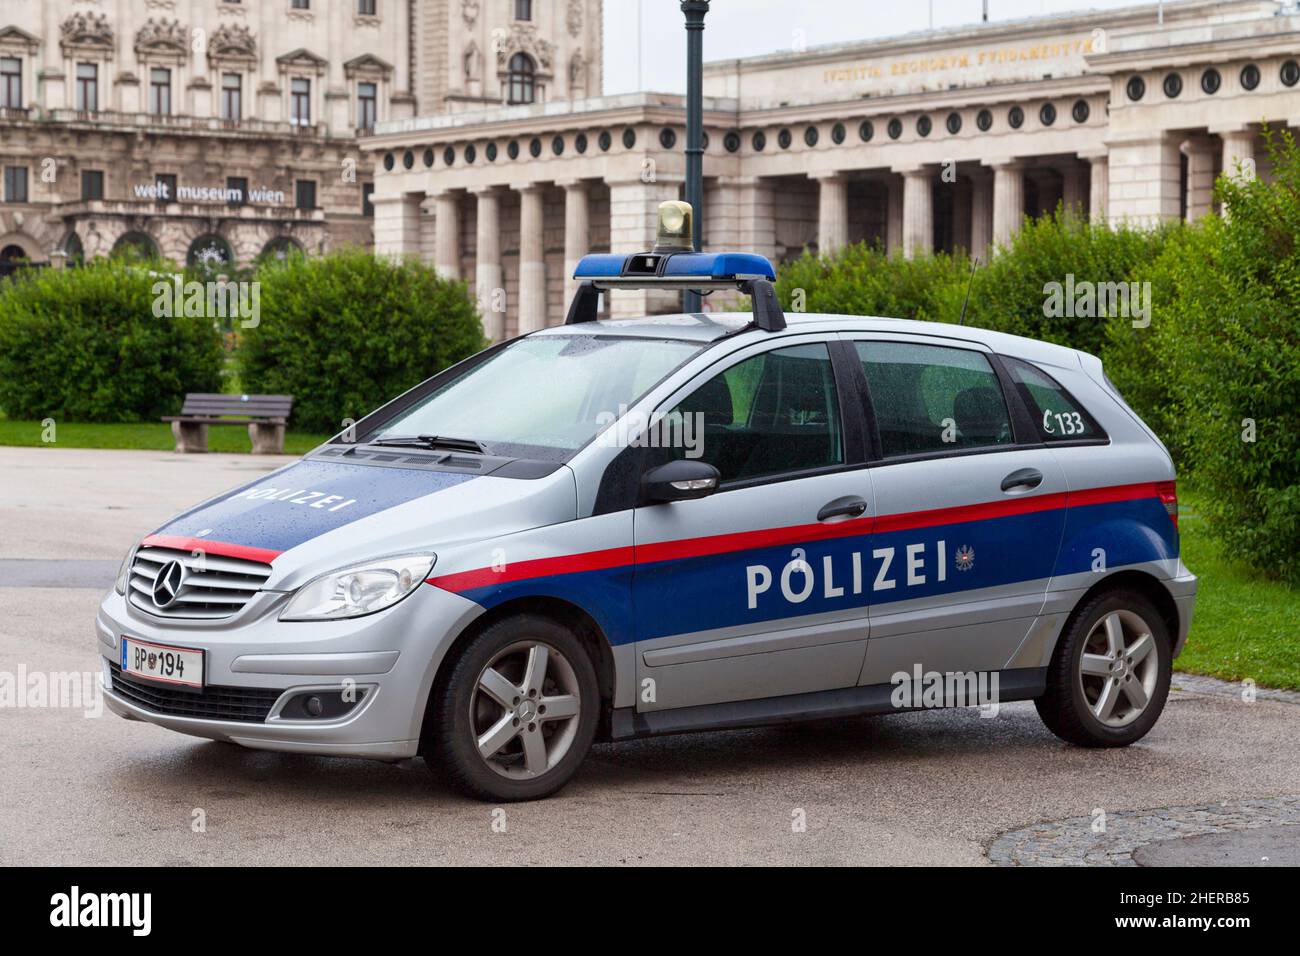 Vienne, Autriche - juin 17 2018 : voiture de police garée près du palais Hofburg. Banque D'Images